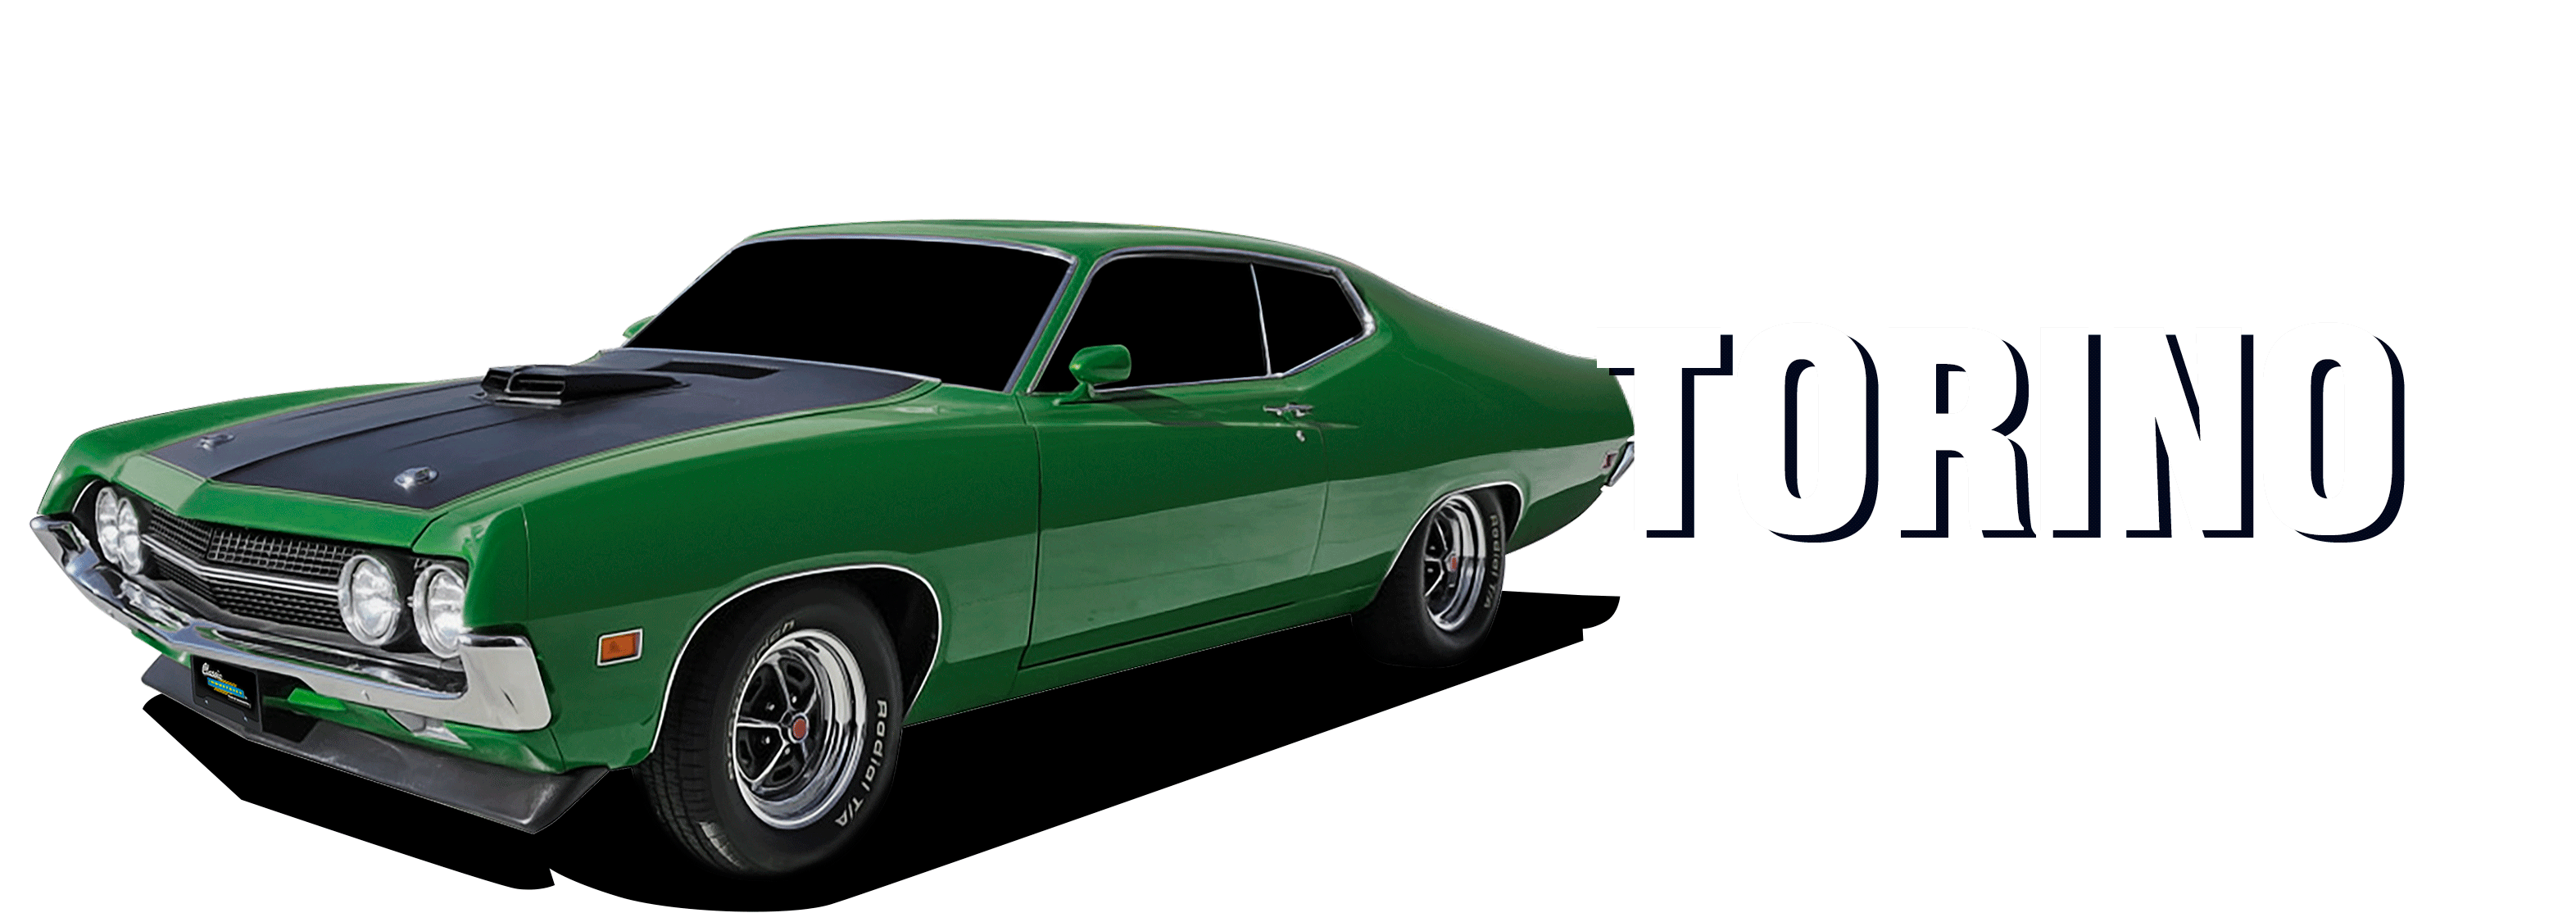 Ford-Torino-vehicle-desktop-2023